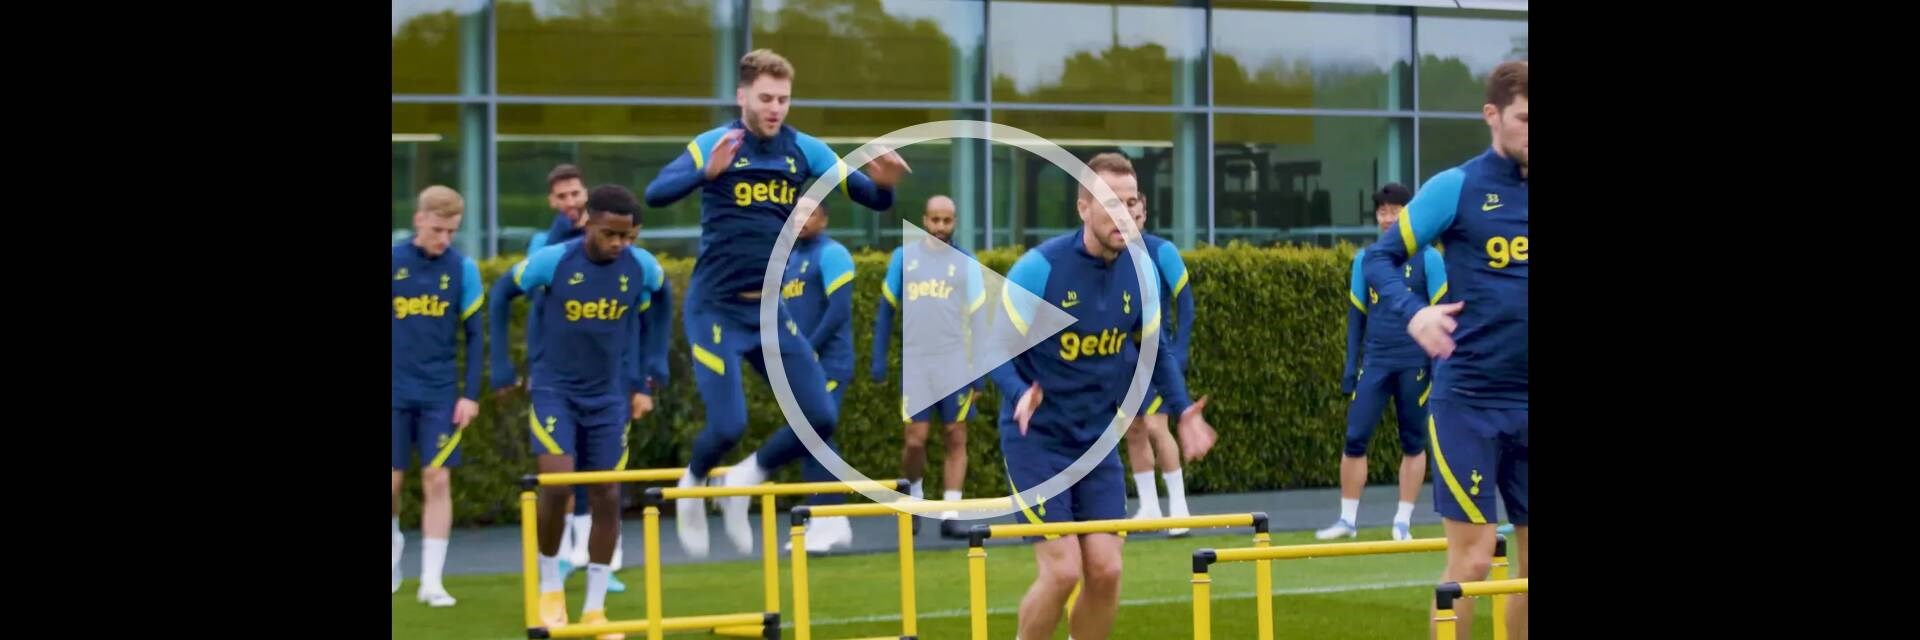 Tottenham Hotspur players jumping hurdles in training